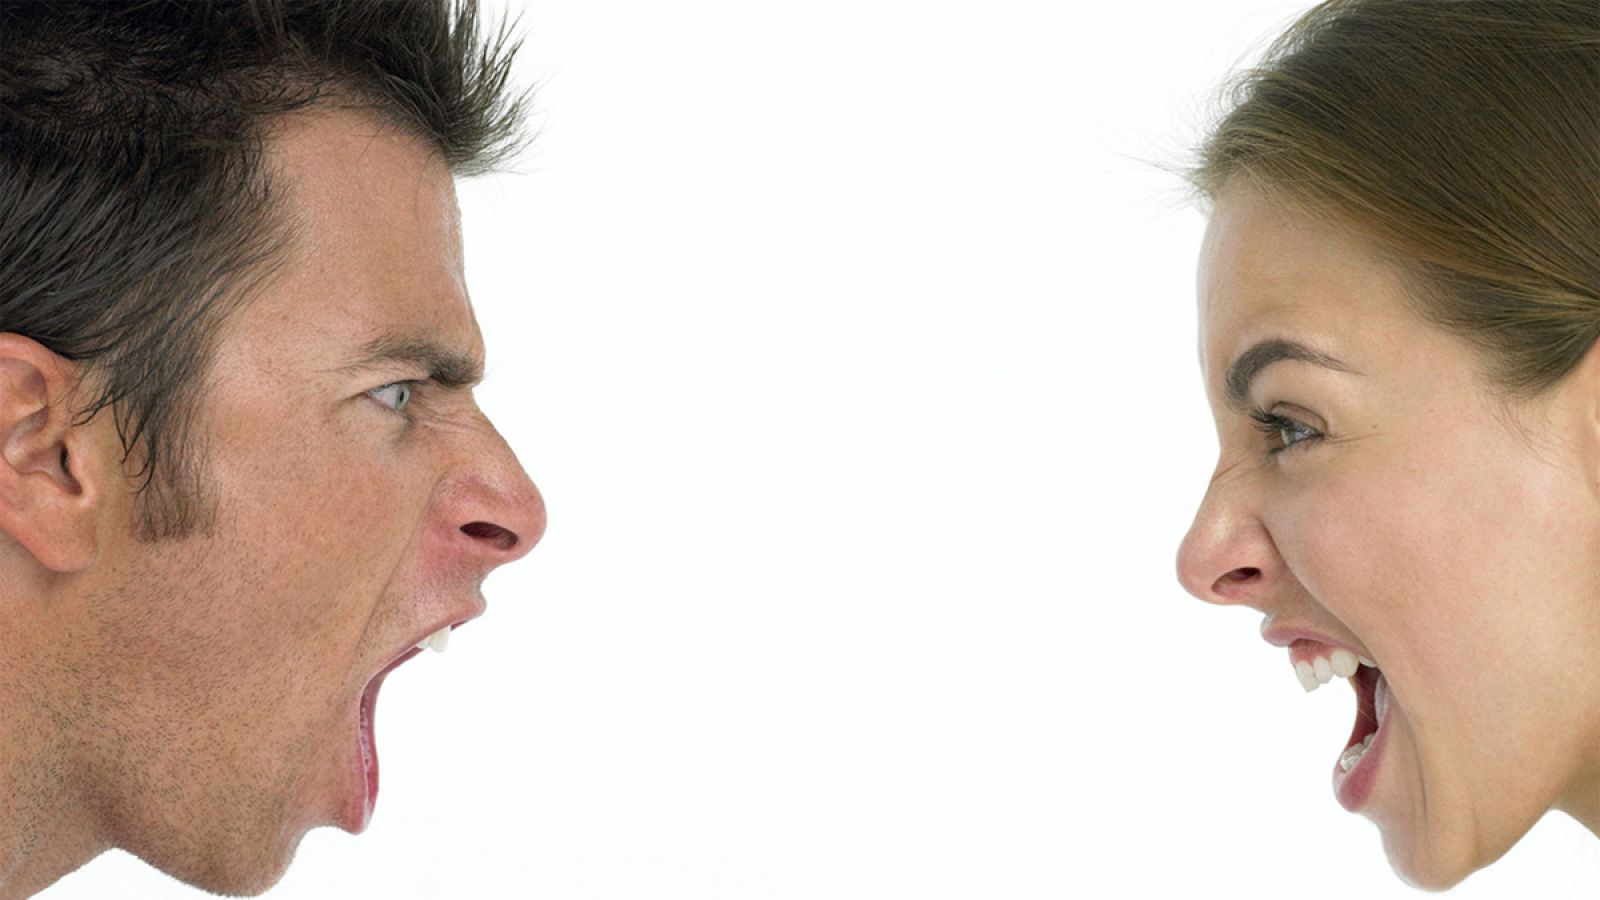 El enojo o la rabia aumentan el riesgo de padecer enfermedades cardiovasculares